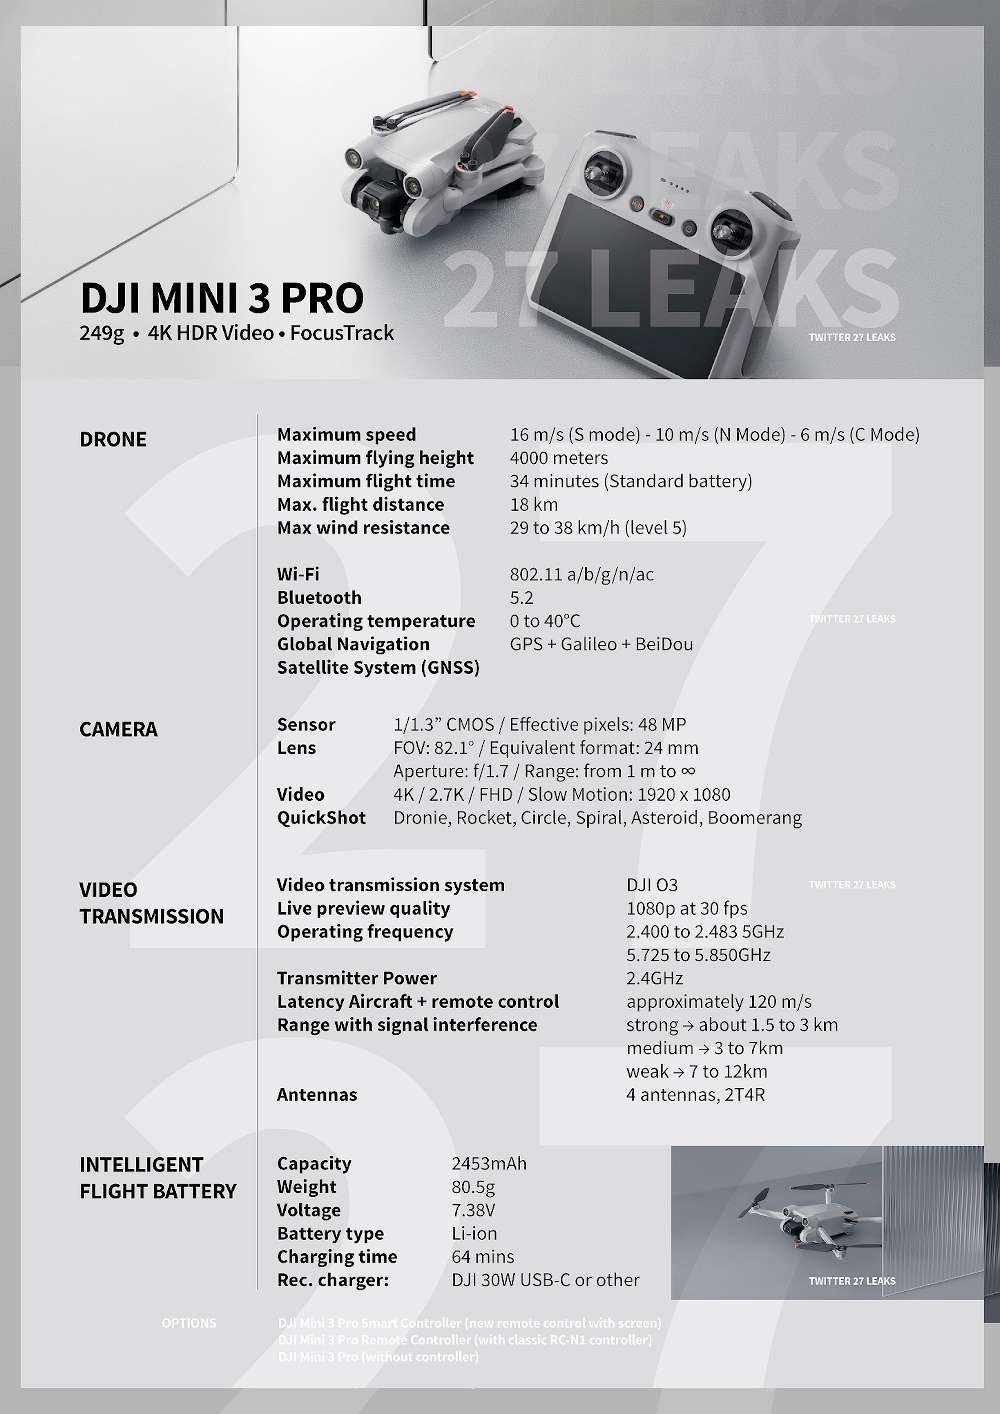 Leaked : DJI Mini 3 Pro Drone Specifications